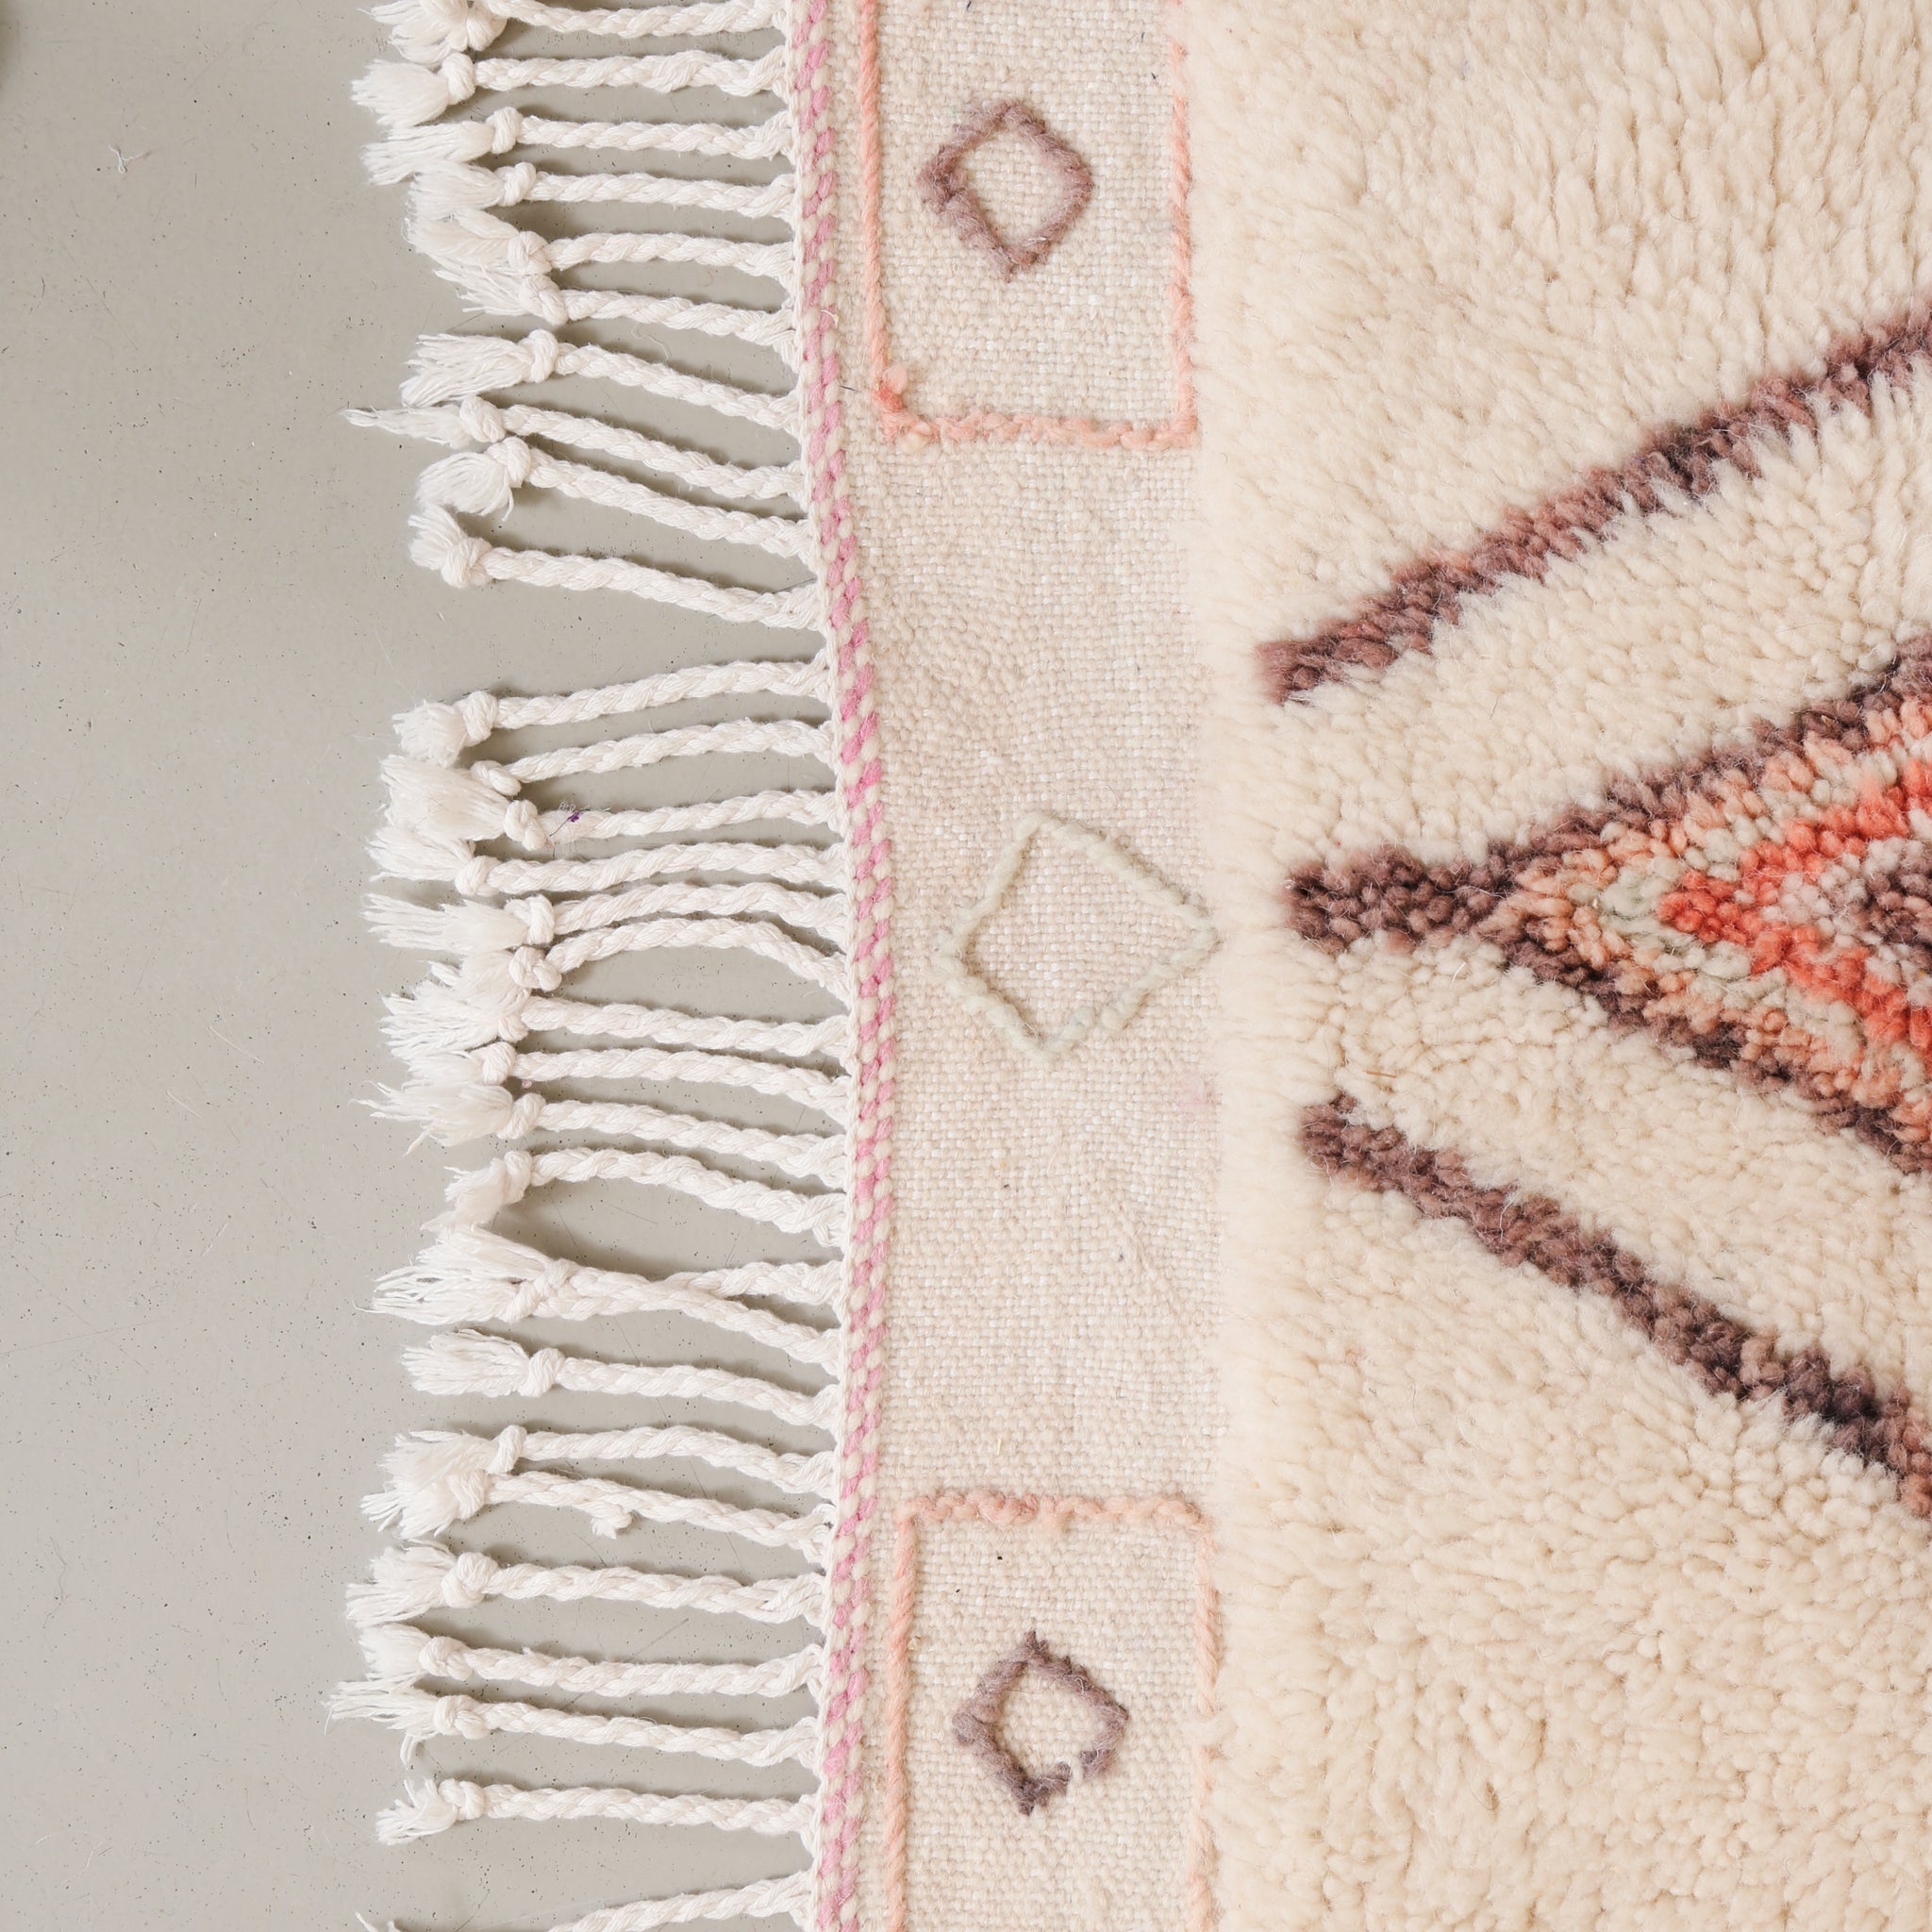 dettaglio della frangia di un tappeto azilal che mette in risalto il ricamo